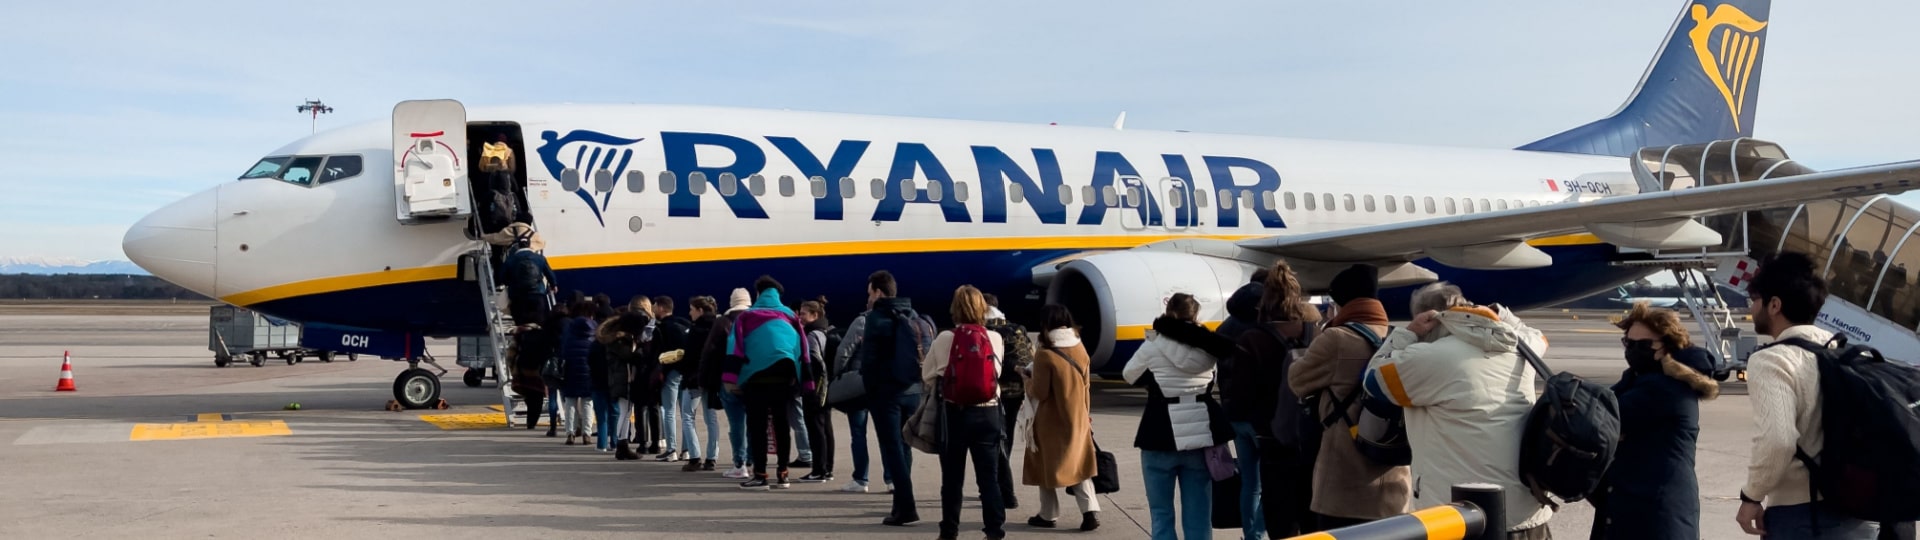 Ryanair má zájem o sloty ITA Airways v Římě a Miláně